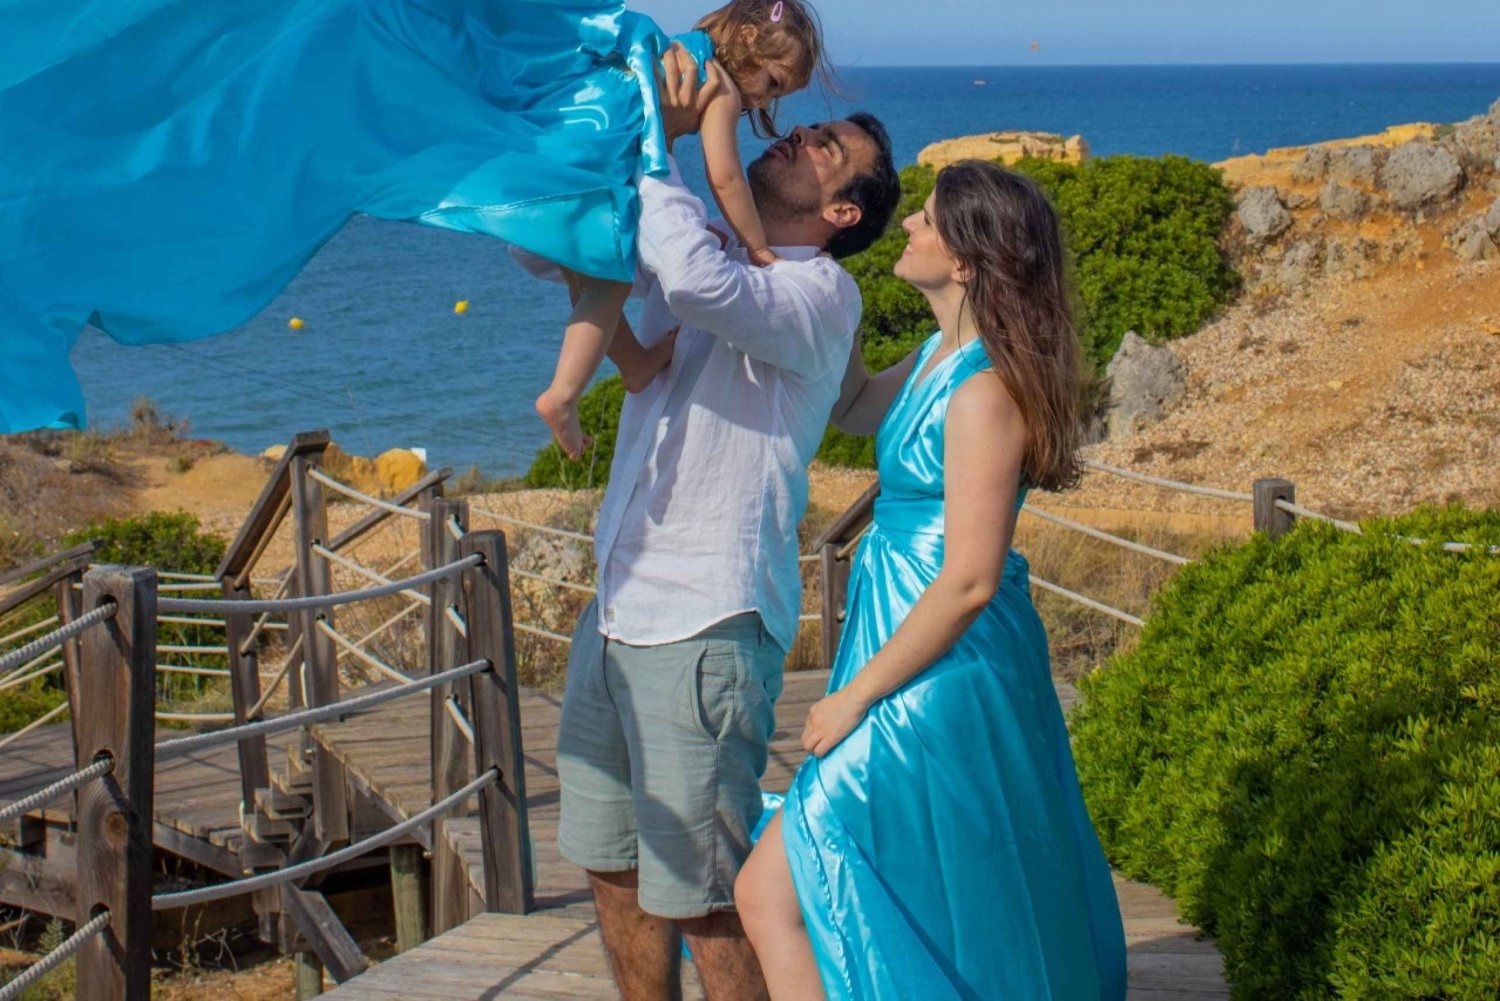 Vliegjurk Algarve - Belevenis voor het hele gezin